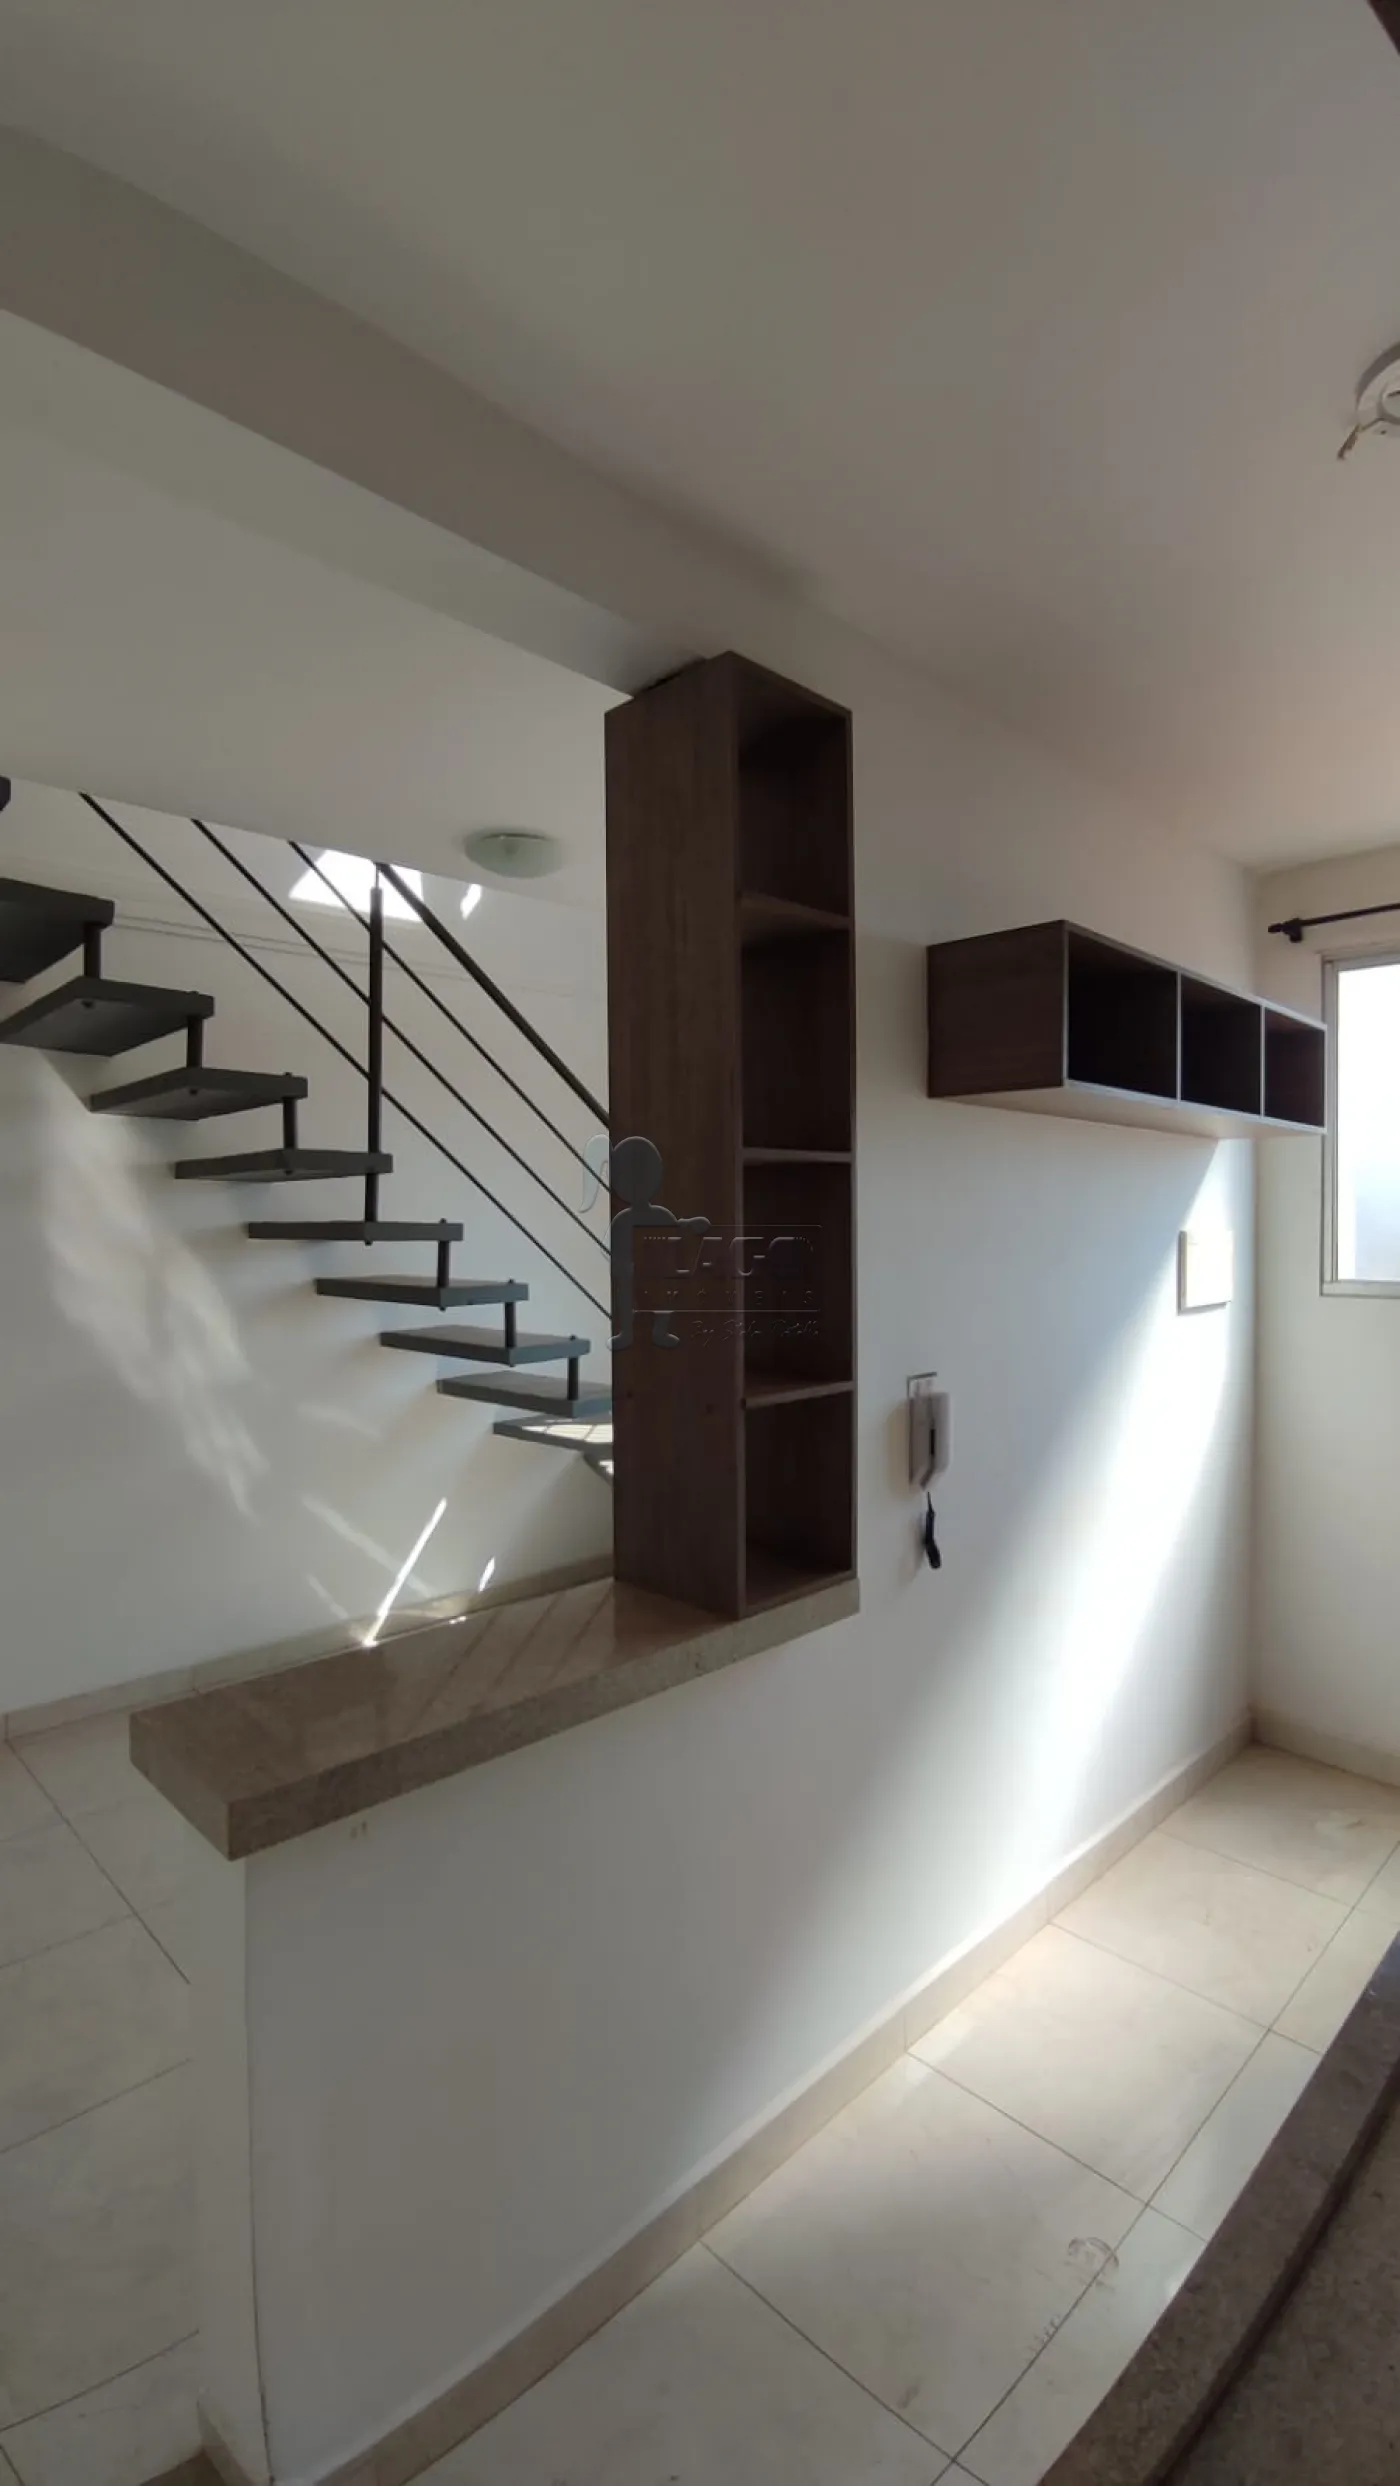 Comprar Apartamento / Cobertura duplex em Ribeirão Preto R$ 350.000,00 - Foto 2